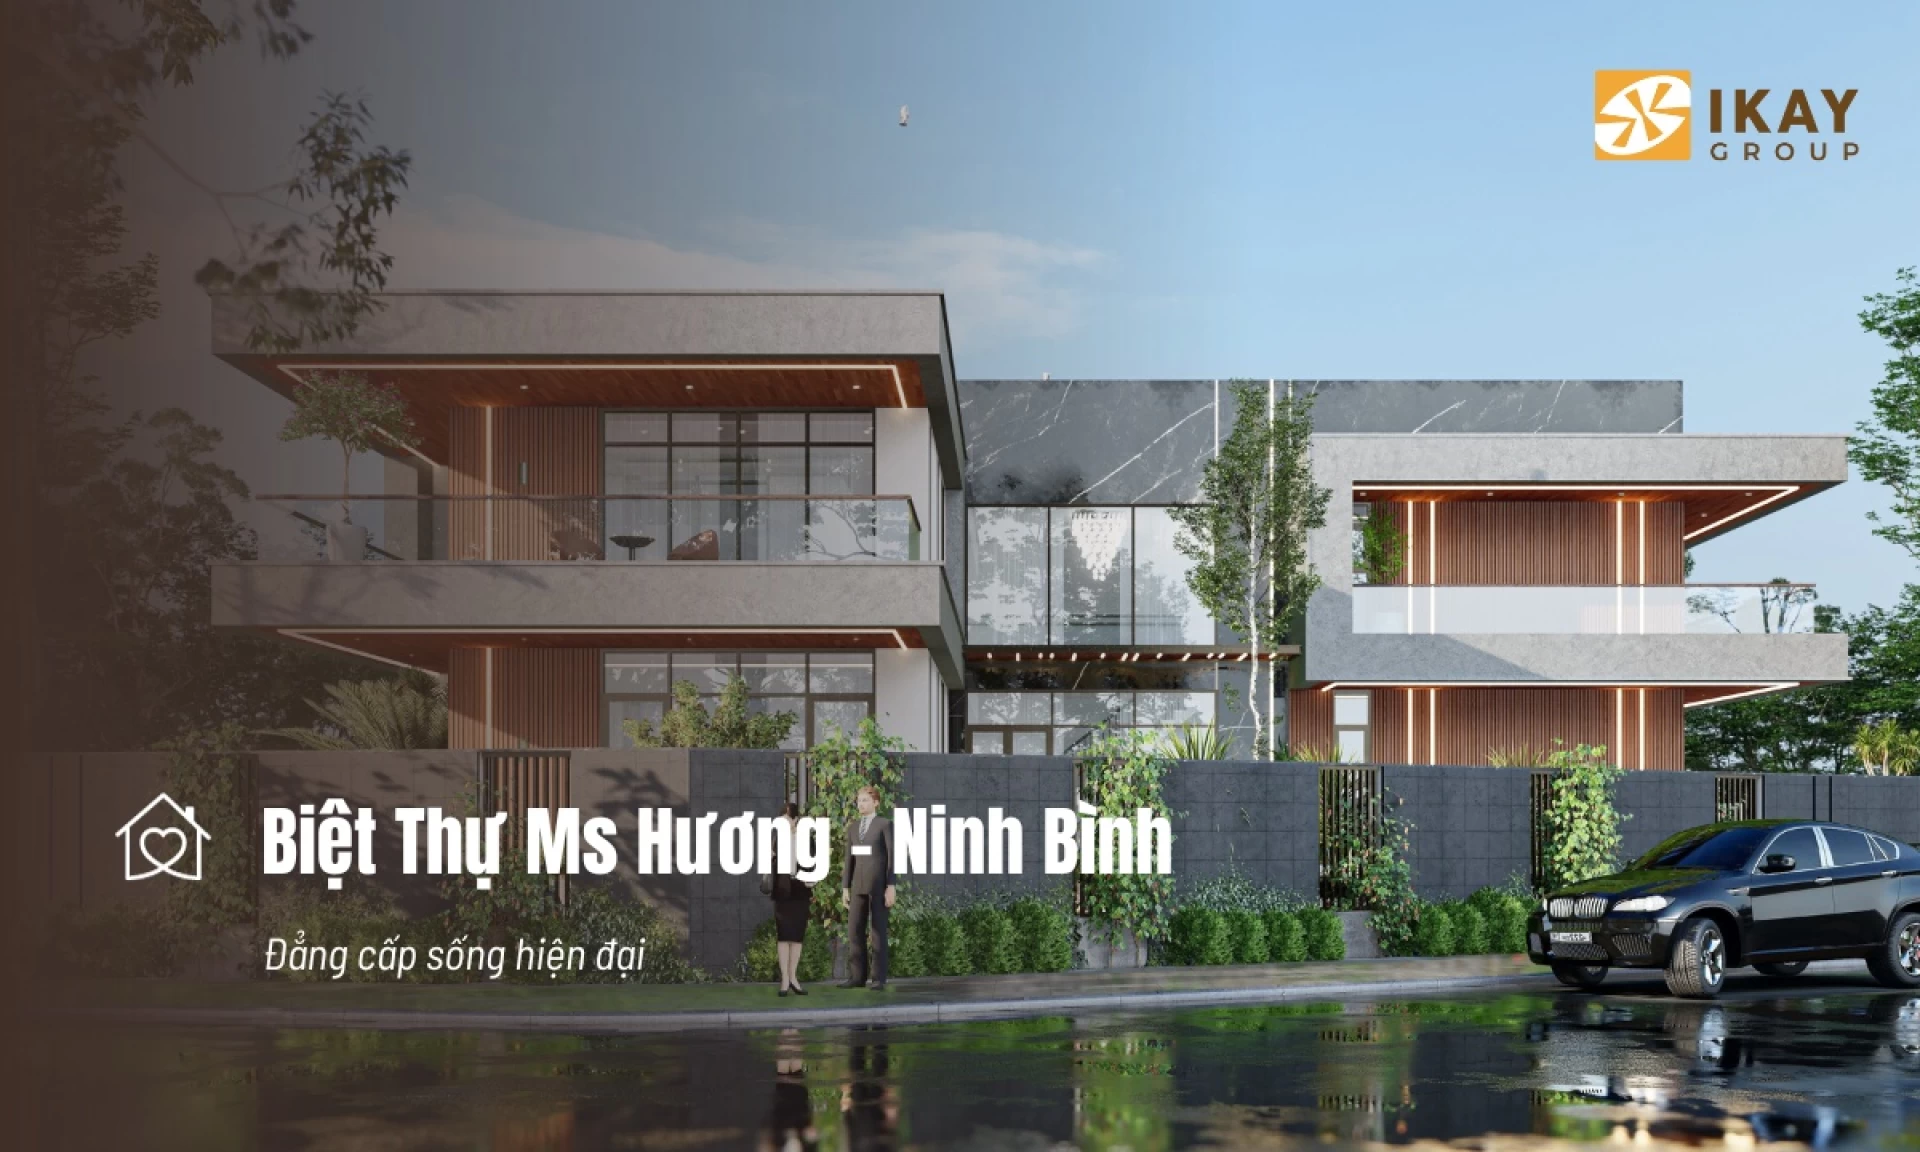 Mẫu thiết kế Biệt thự tại ninh bình - Chị Hương ở Huyện Yên Khánh